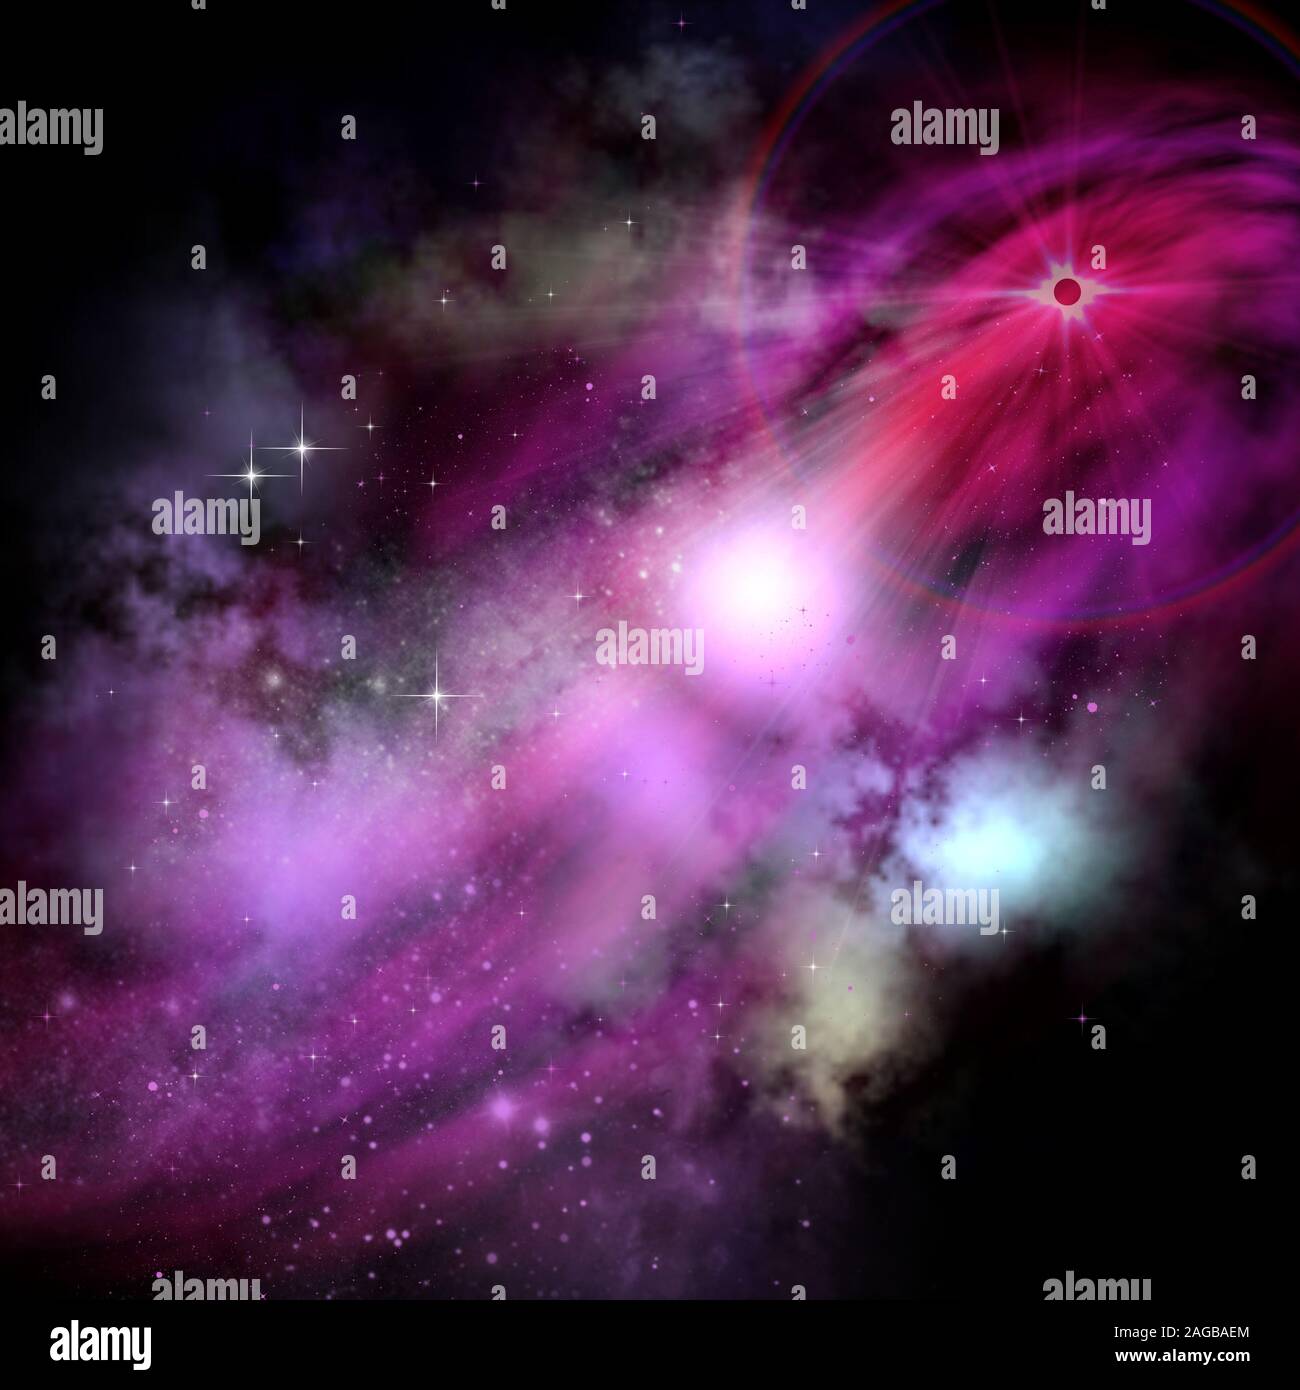 Complesso rosso e rosa nubi molecolari e stelle sentiero da un enorme rosso brillante nebulosa a stella nel cosmo infinito. Foto Stock